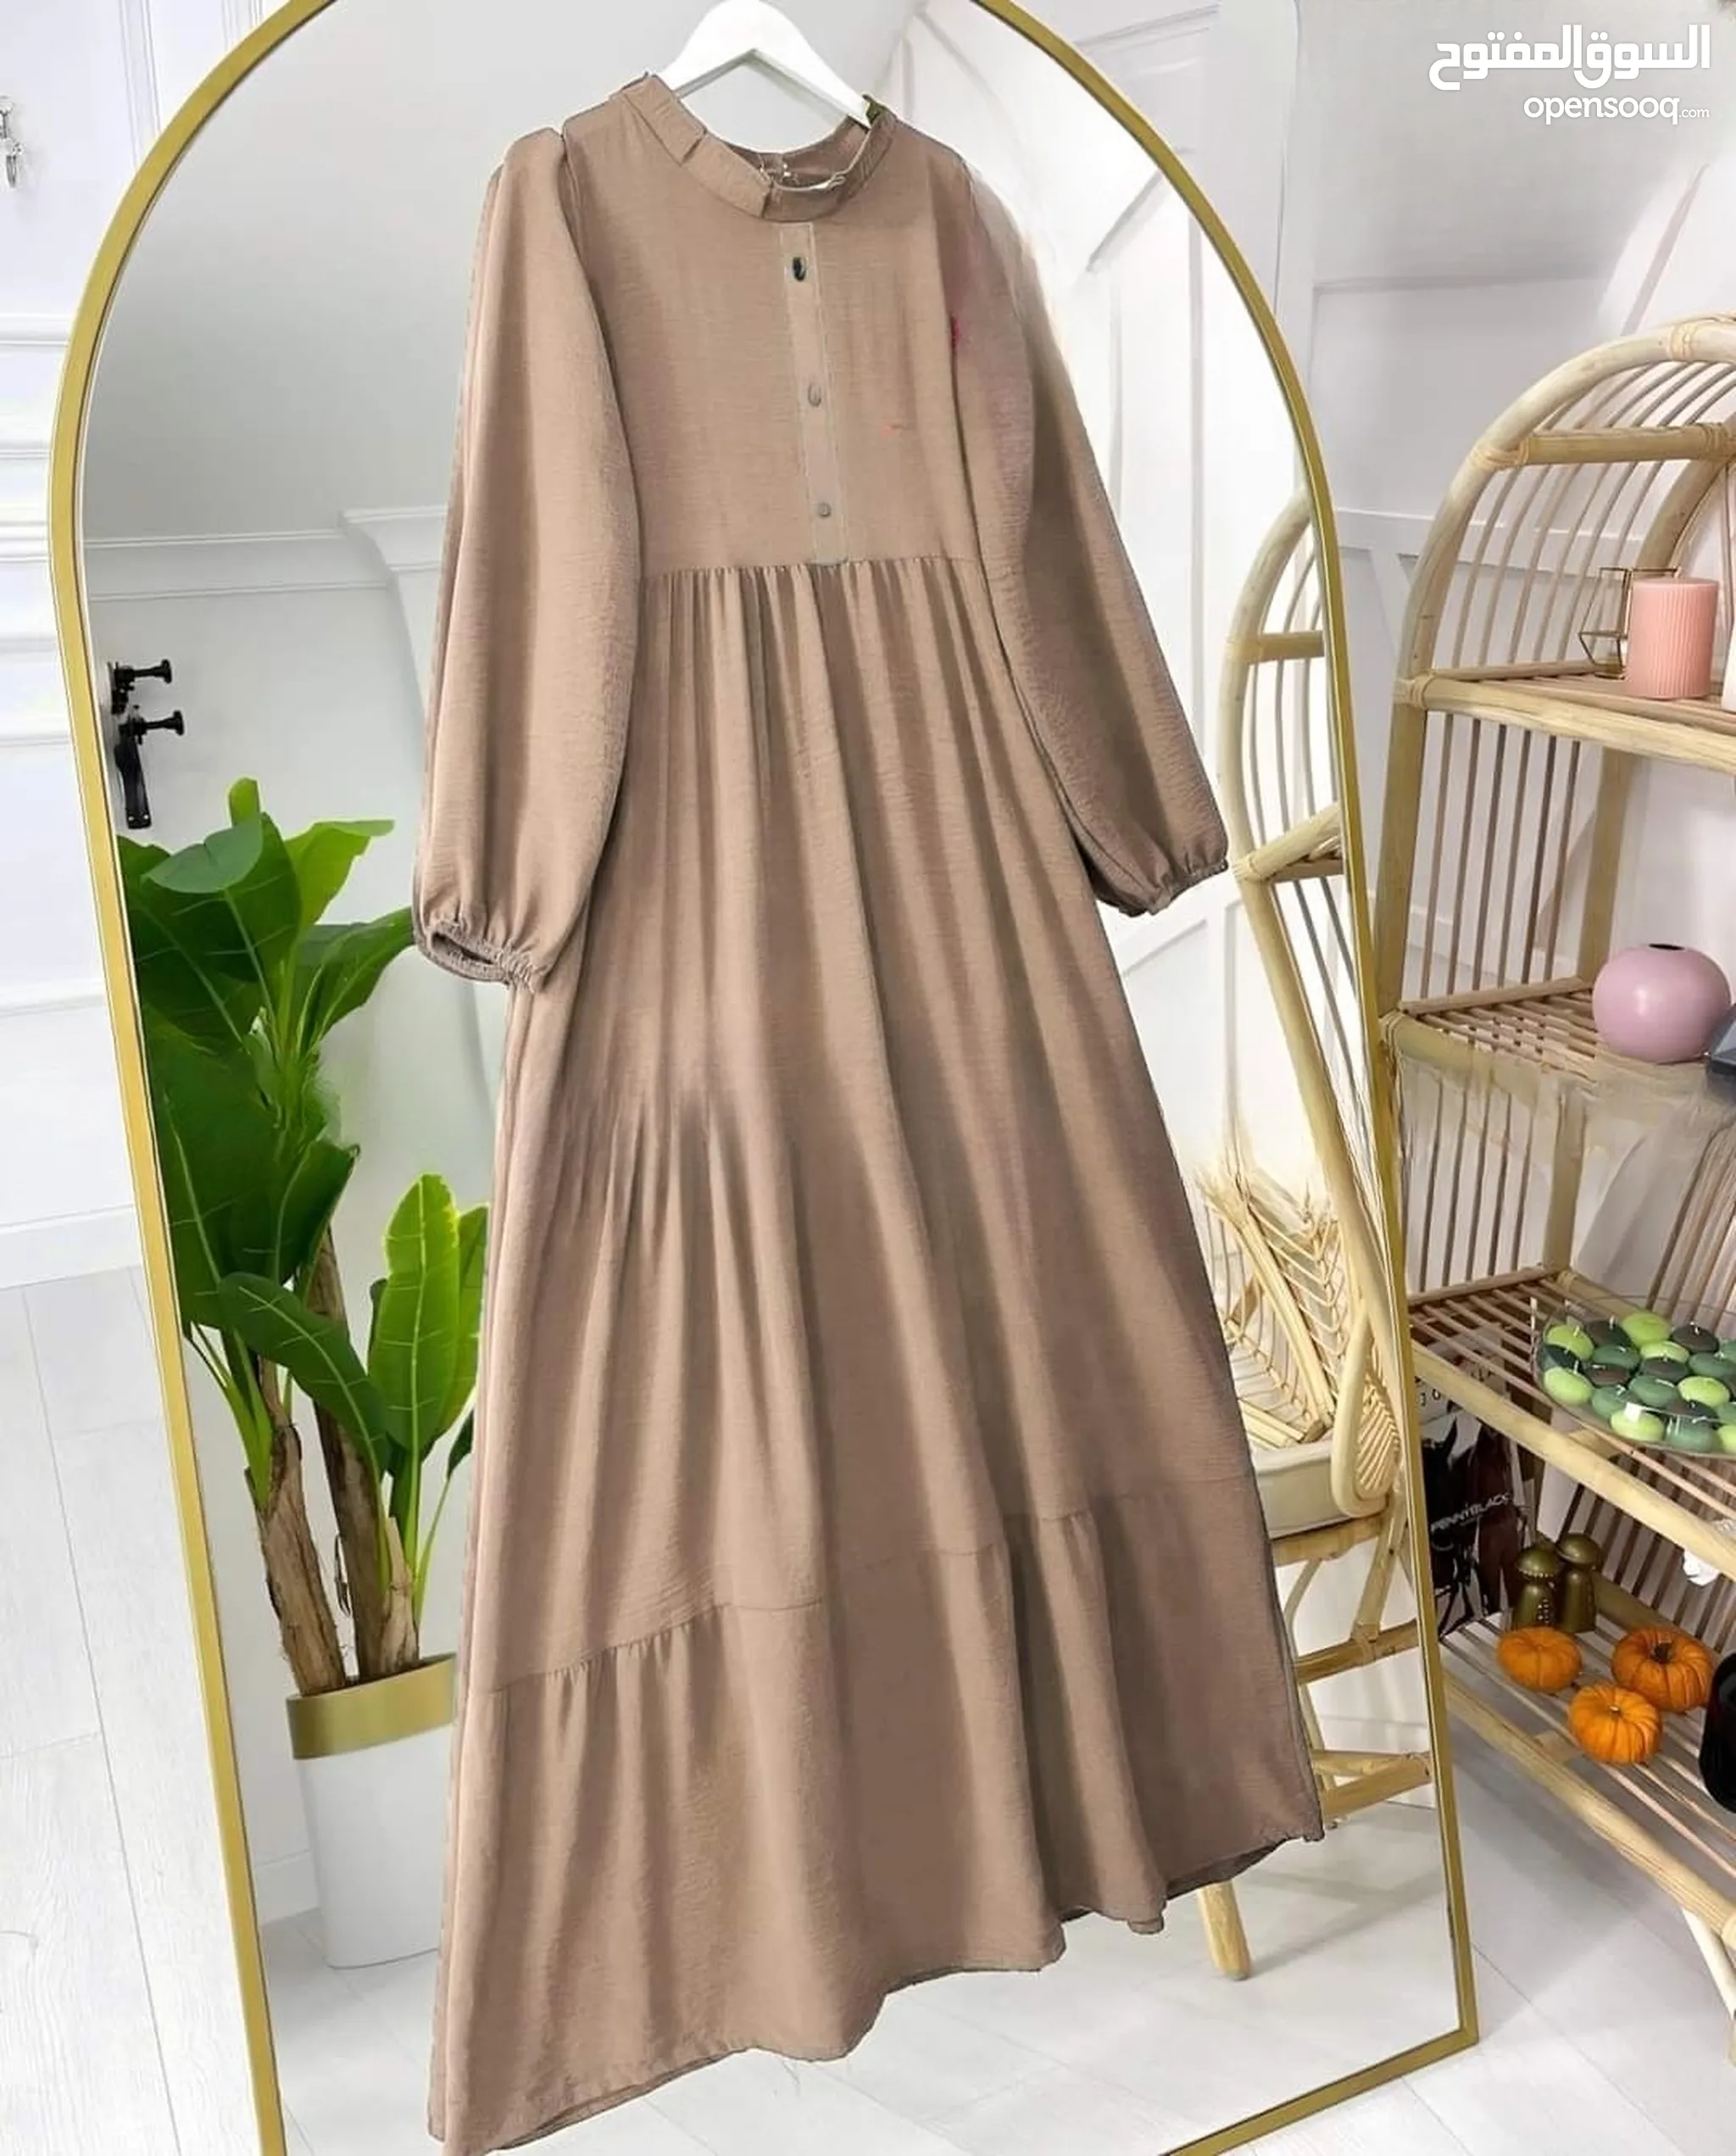 فساتين طويلة نسائية للبيع : ملابس وأزياء نسائية في عمان : تسوق اونلاين أجدد  الموديلات | السوق المفتوح